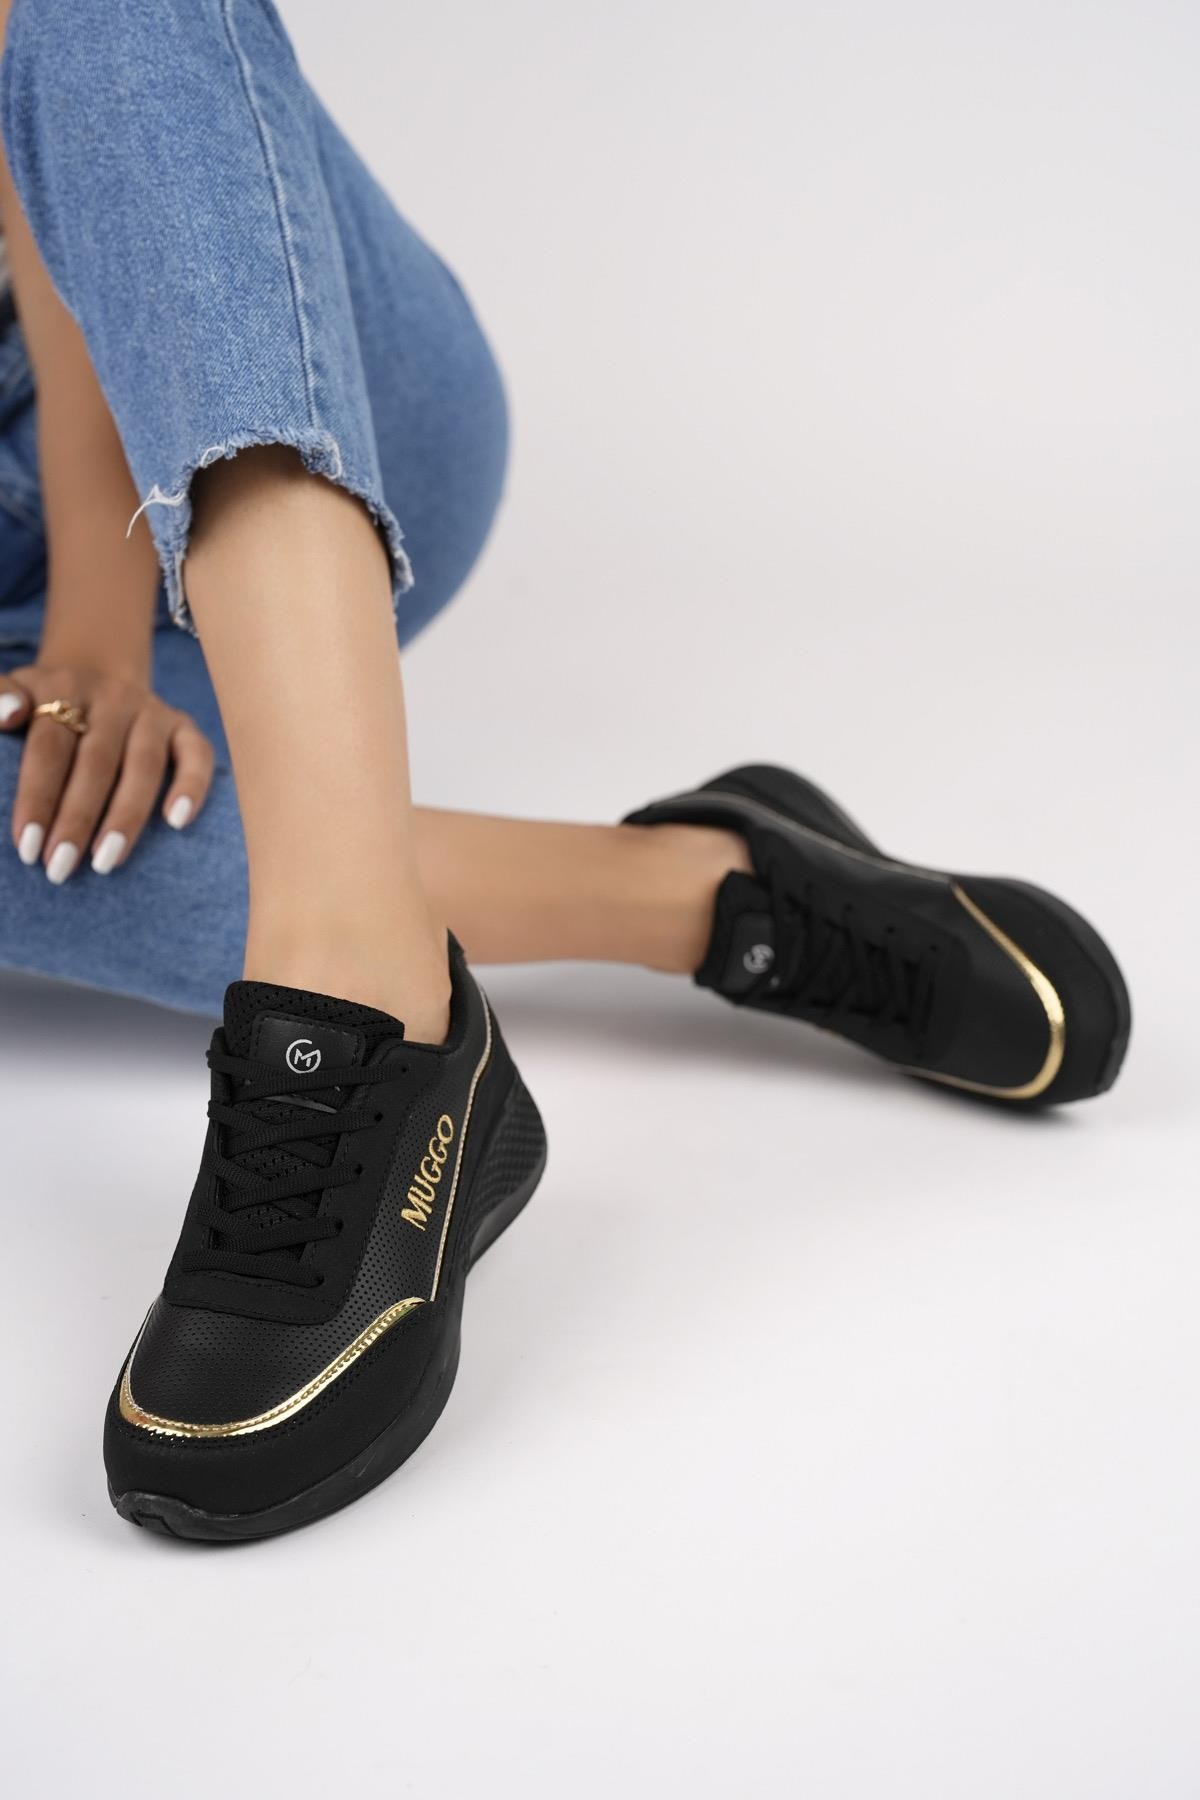 Muggo Happy Garantili Kadın Ortopedik Günlük Bağcıklı Şık Rahat Sneaker Spor Ayakkabı - SİYAH - ALTIN